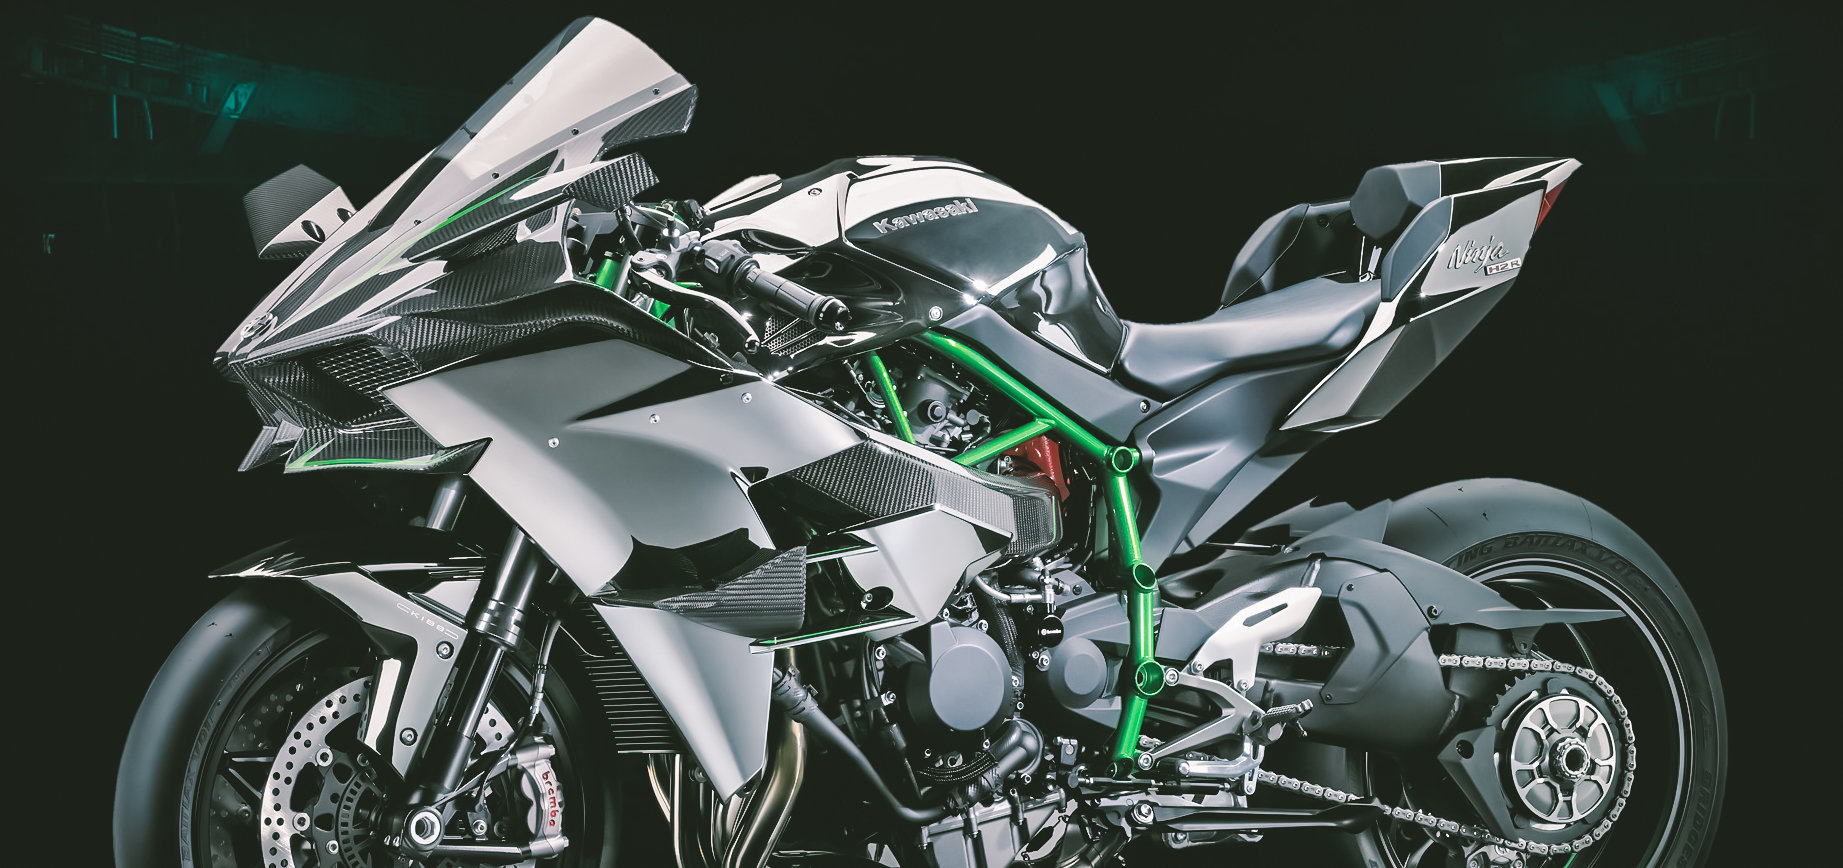 The Kawasaki Ninja H2r Supercharged Hp And Wings